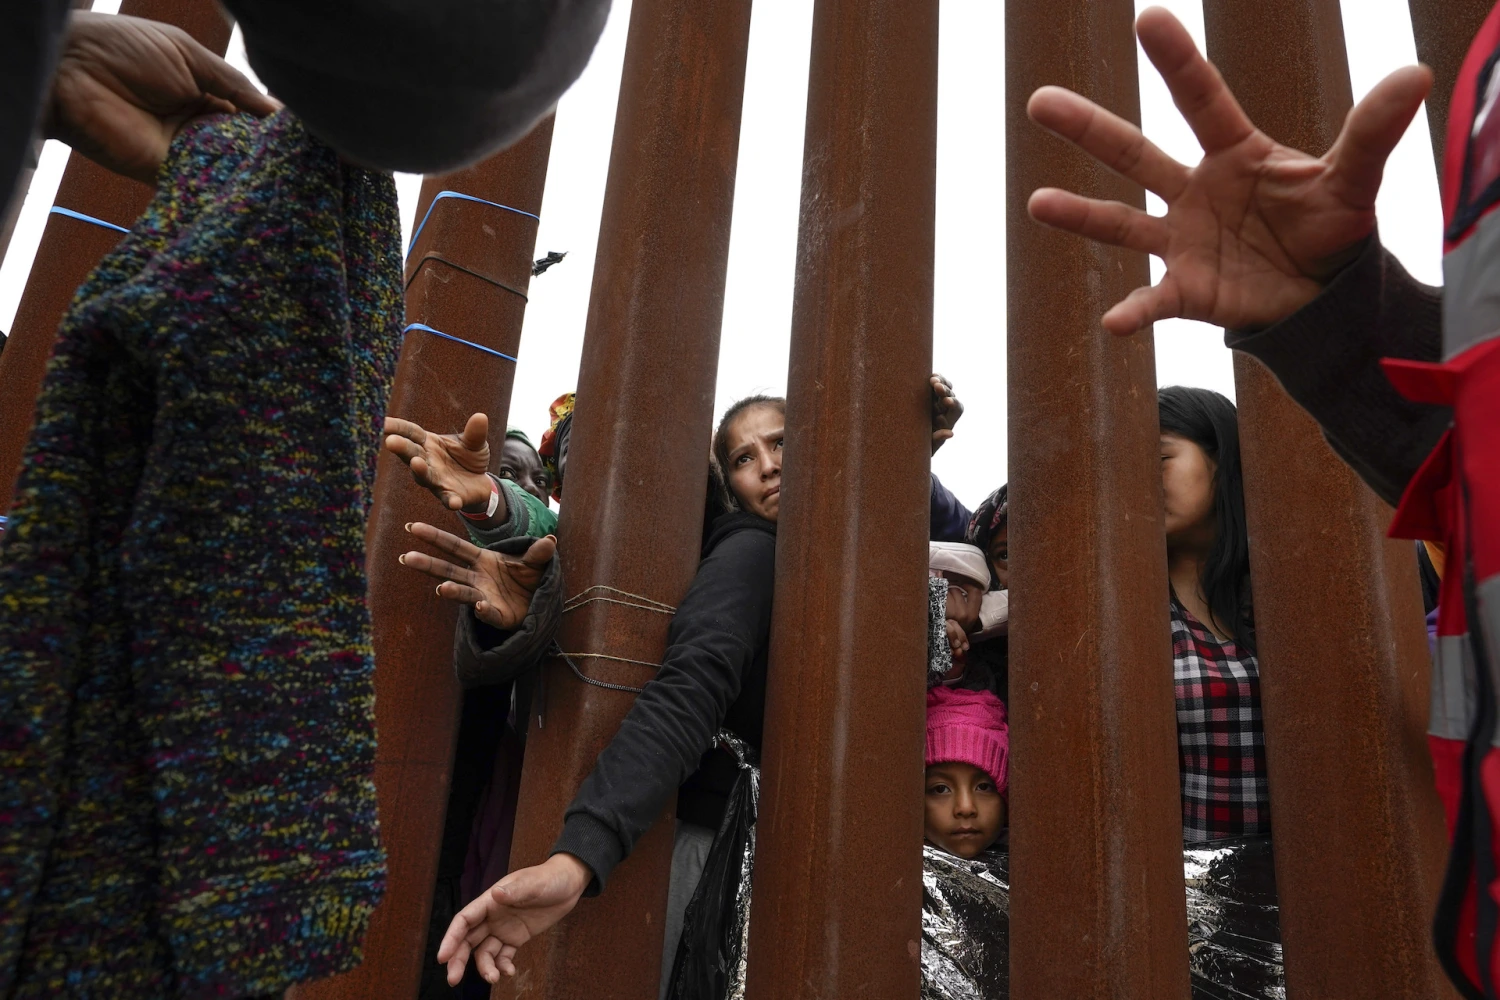 Juez federal bloquea liberación de migrantes en la frontera